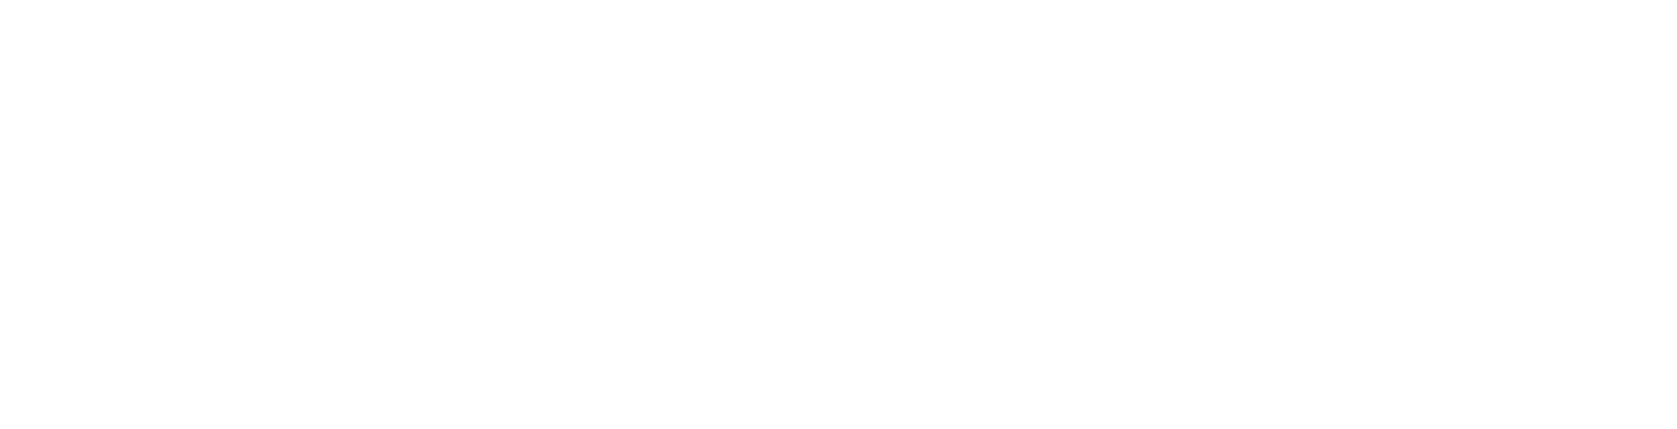 Lost in America logo